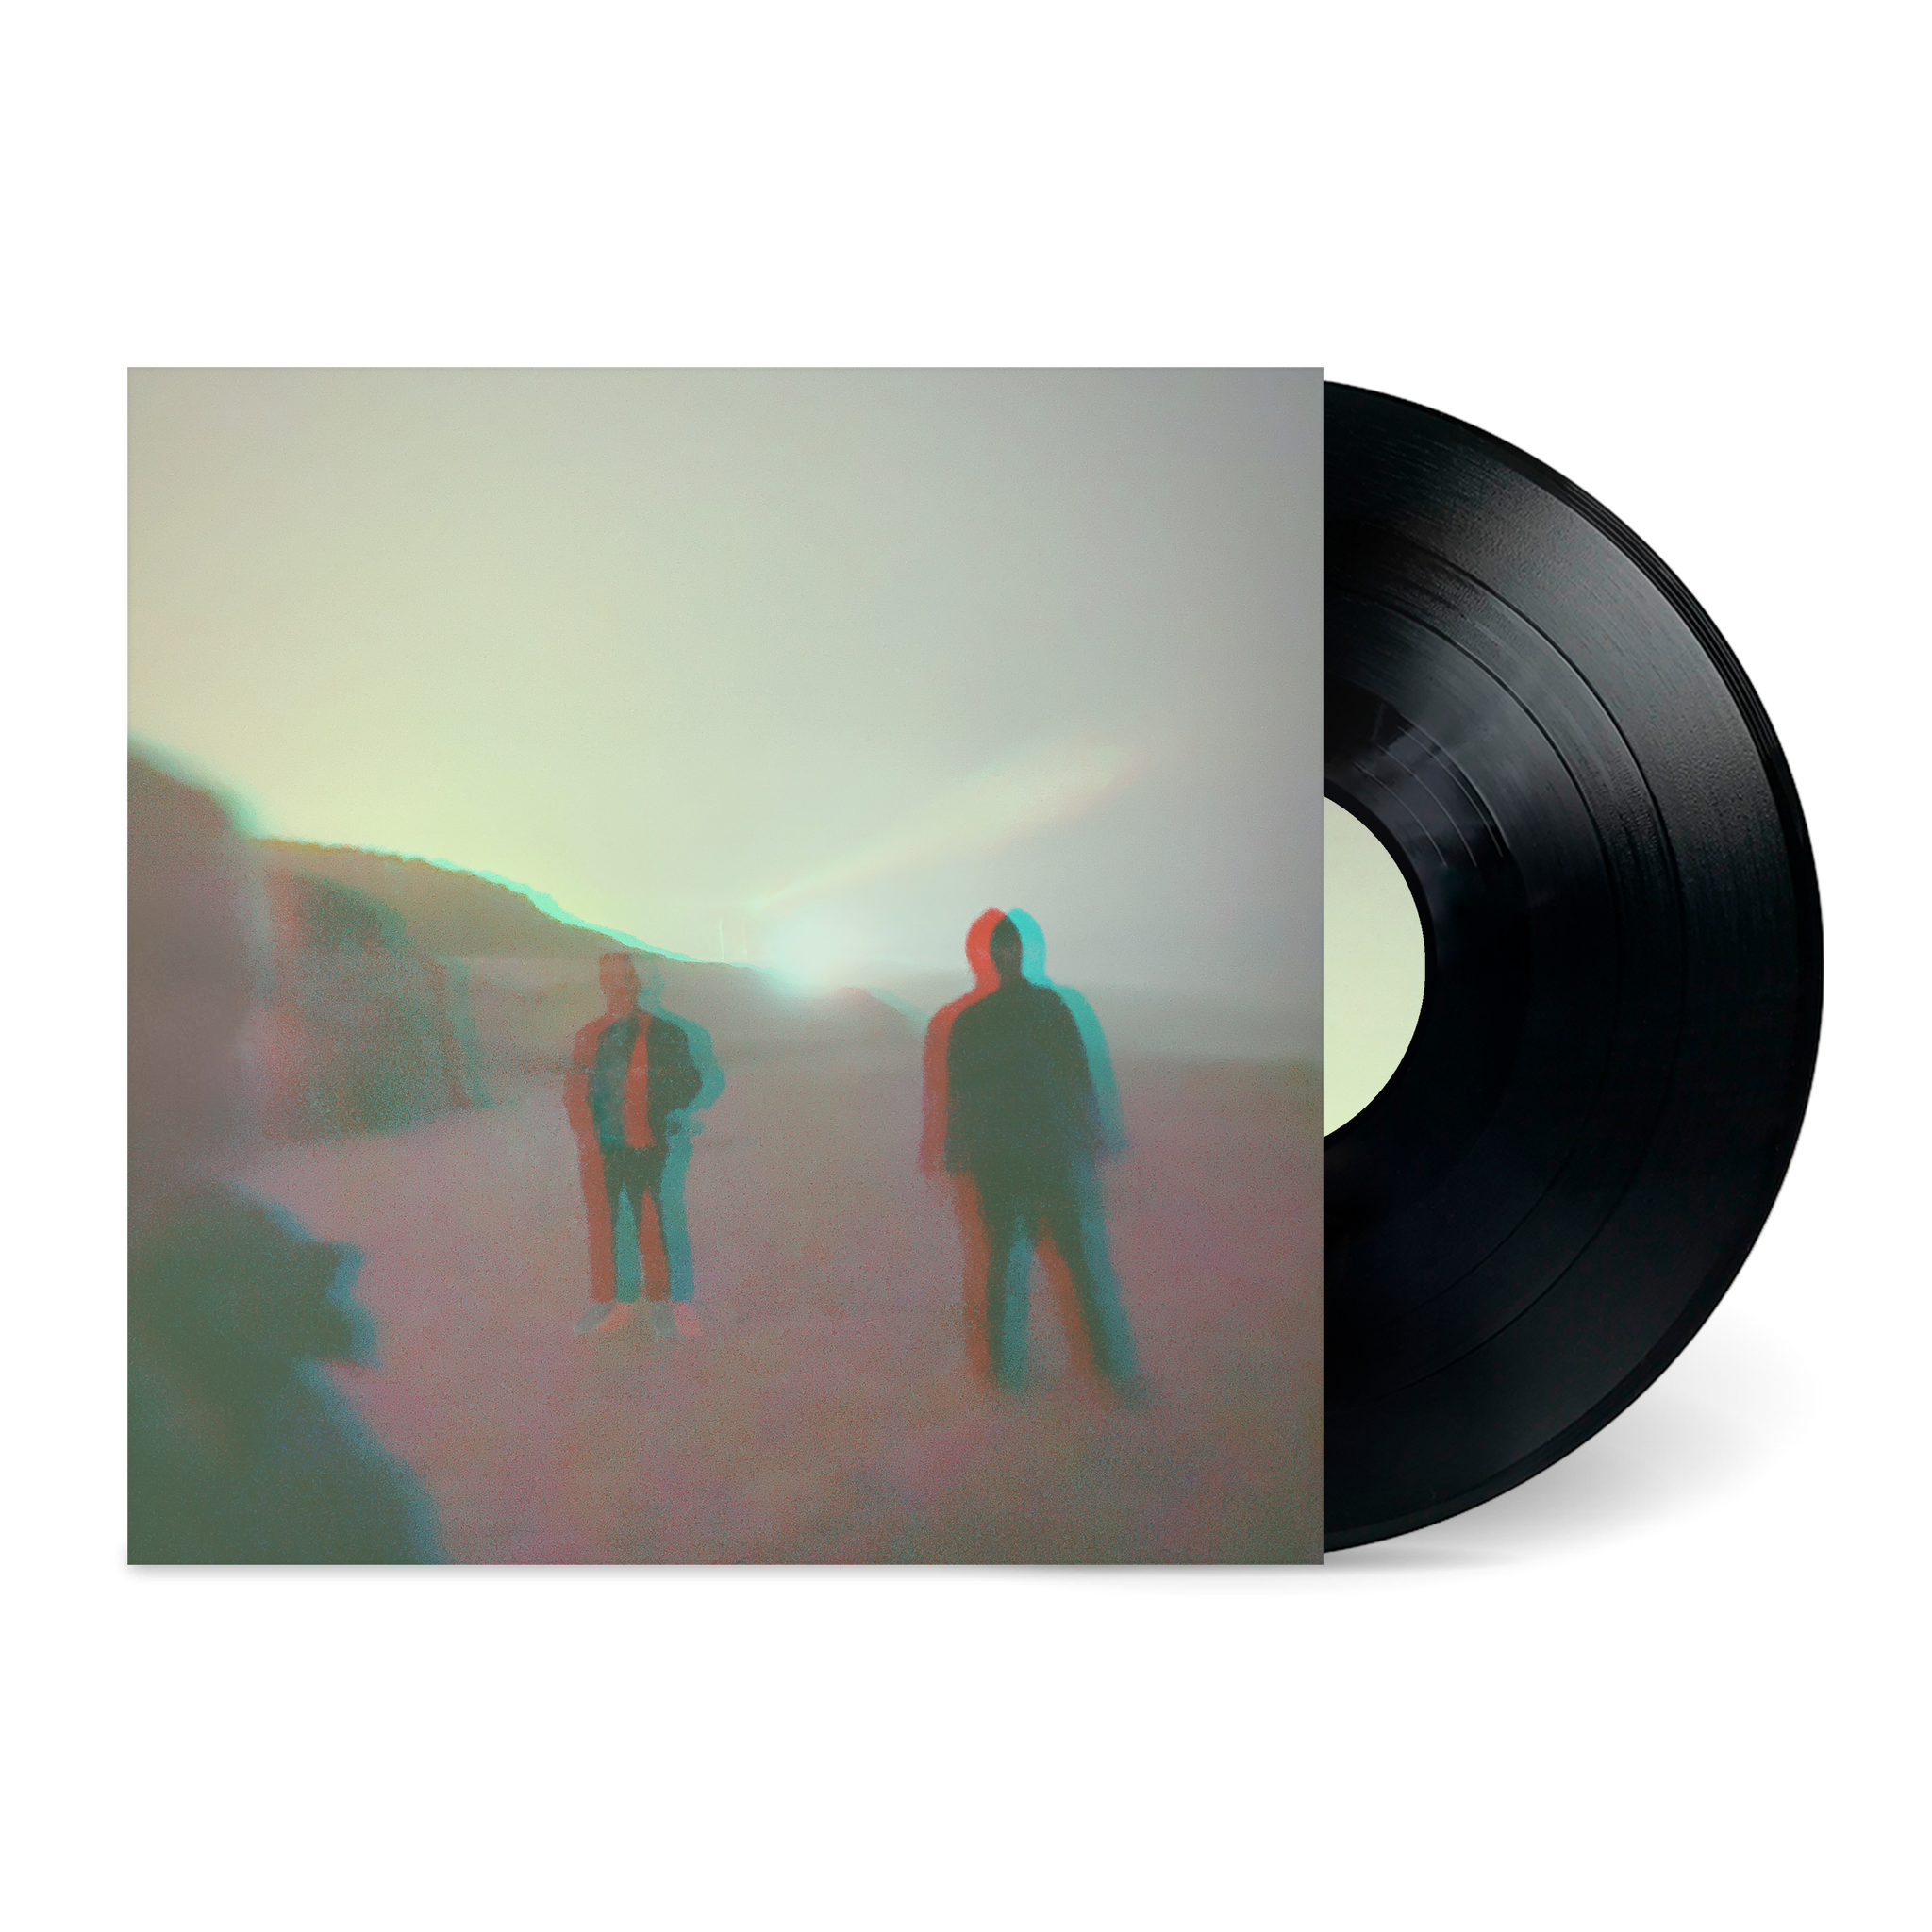 Stranger Things season 4 soundtrack released on vinyl – The Vinyl Factory